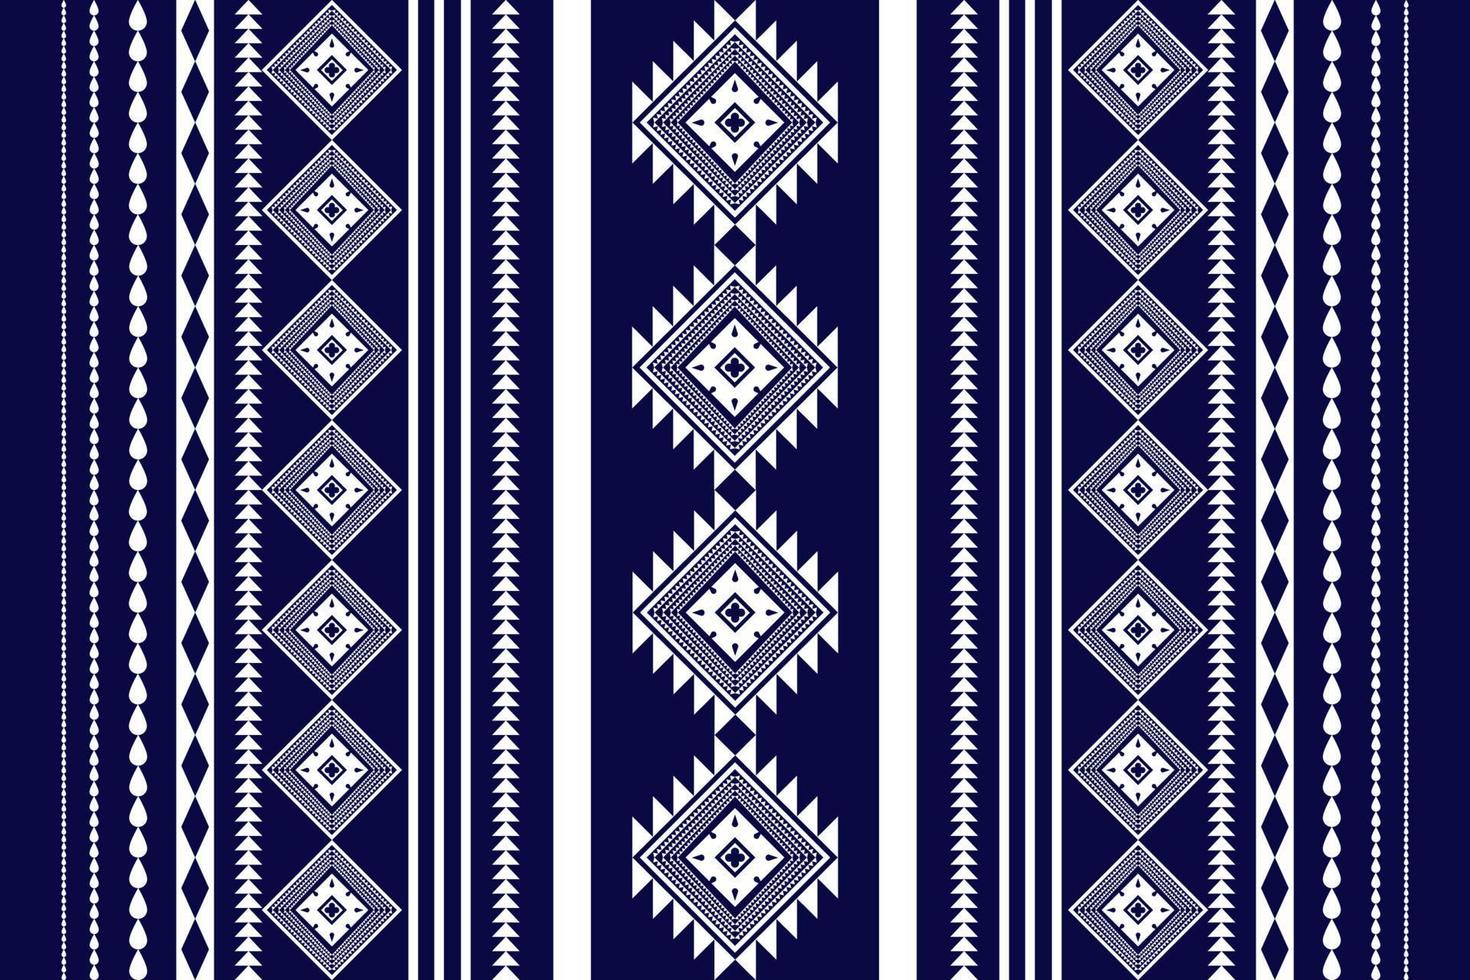 design tradicional de padrão geométrico étnico oriental sem costura para plano de fundo, tapete, papel de parede. roupas, embrulho, tecido batik, ilustração vetorial. vetor